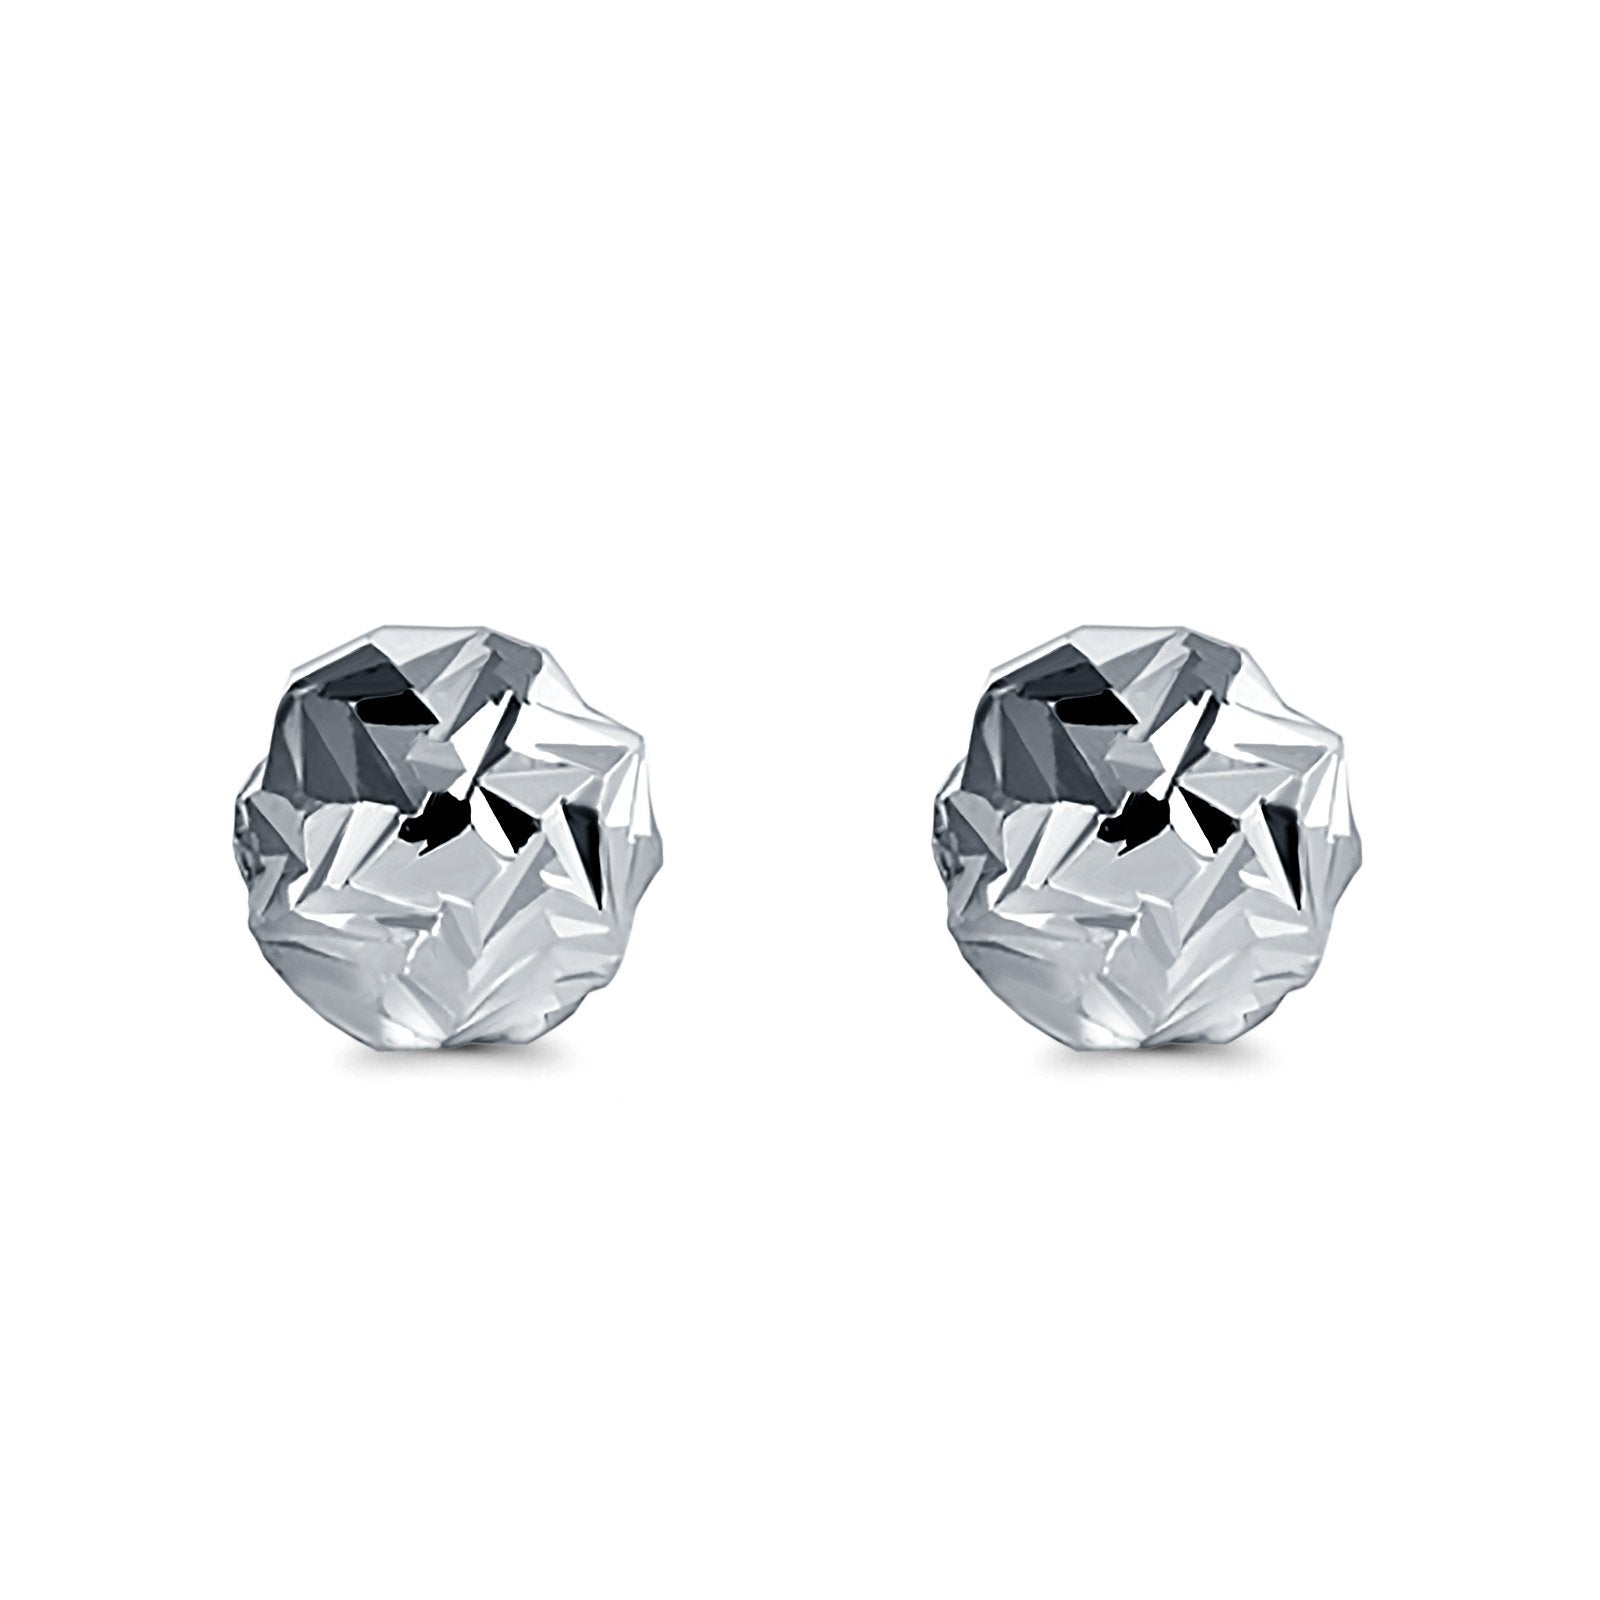 Mini Swirl Sterling Silver Earrings - Handmade Small post Earrings - Nadin  Art Design - Personalized Jewelry